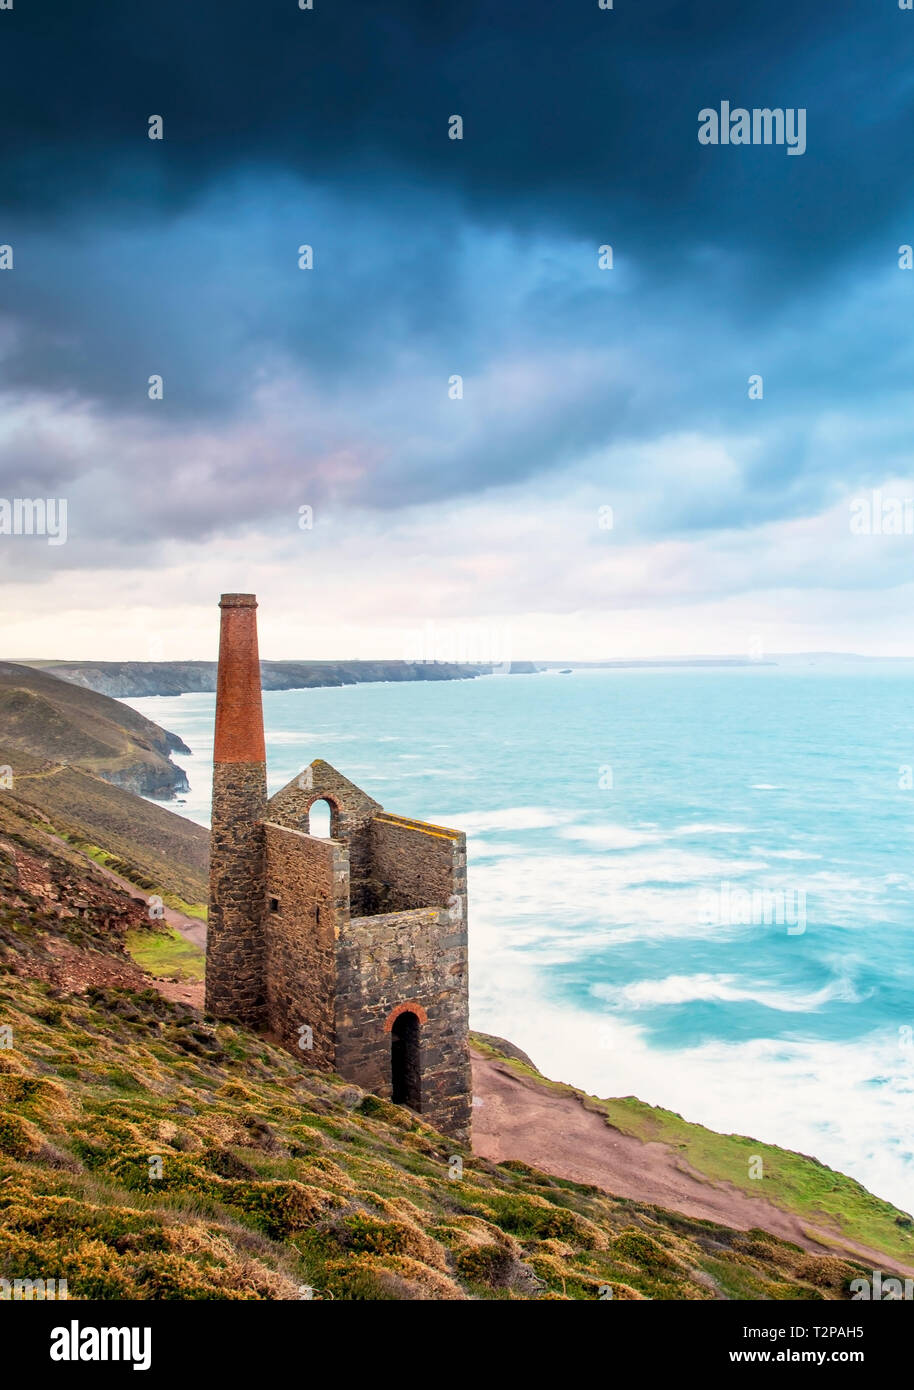 La mina Towanroath eje en pápula igual Coates, en la costa de St Agnes en Cornwall, da a esta composición épica con la hermosa costa de Cornualles resistente Foto de stock